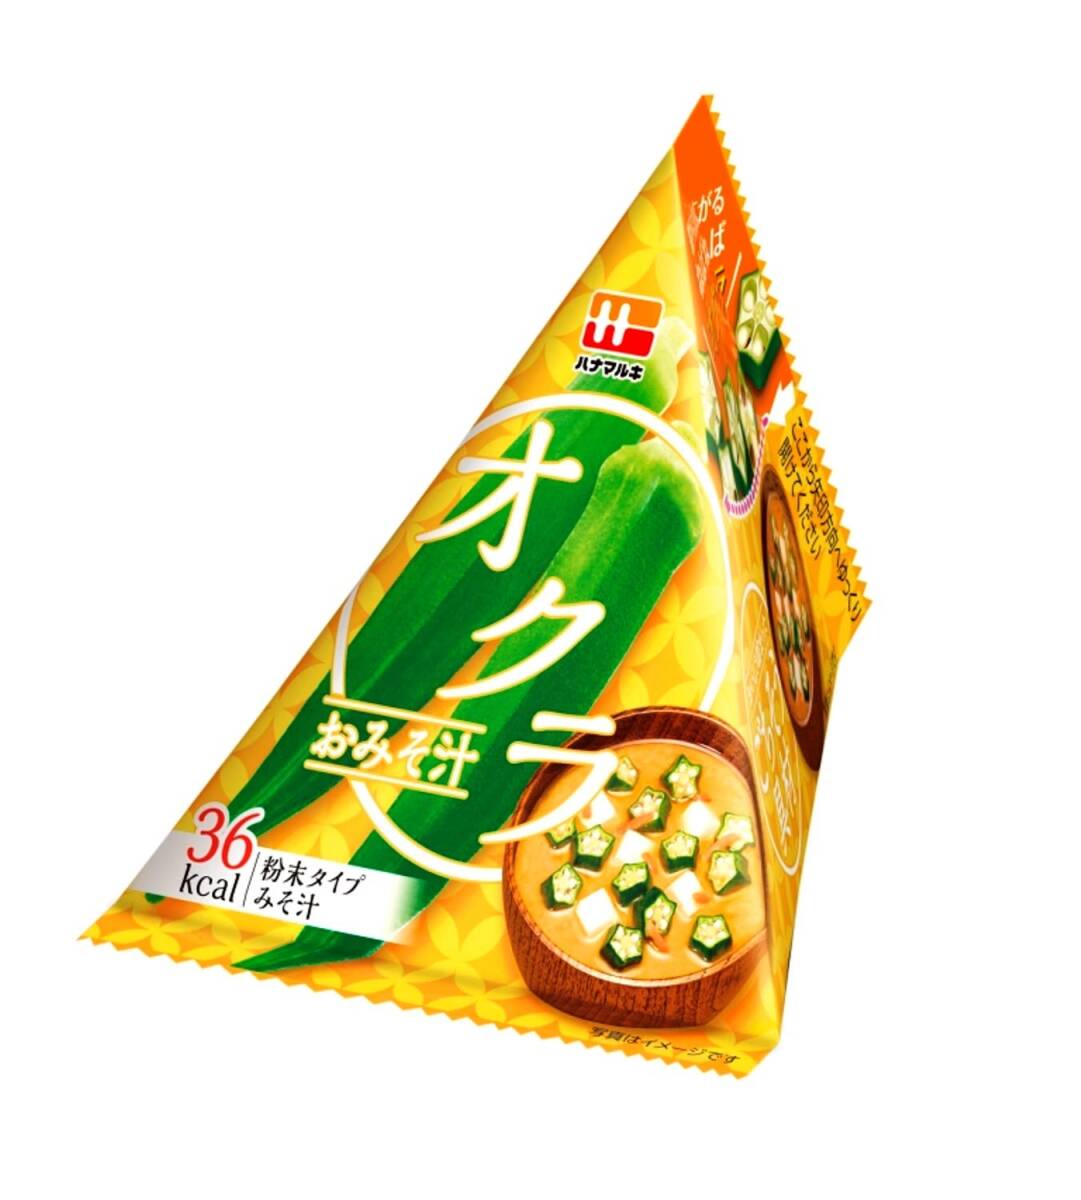  Hanamaruki треугольник P.. похоже абельмош суп мисо 10.1g ×10 пакет 